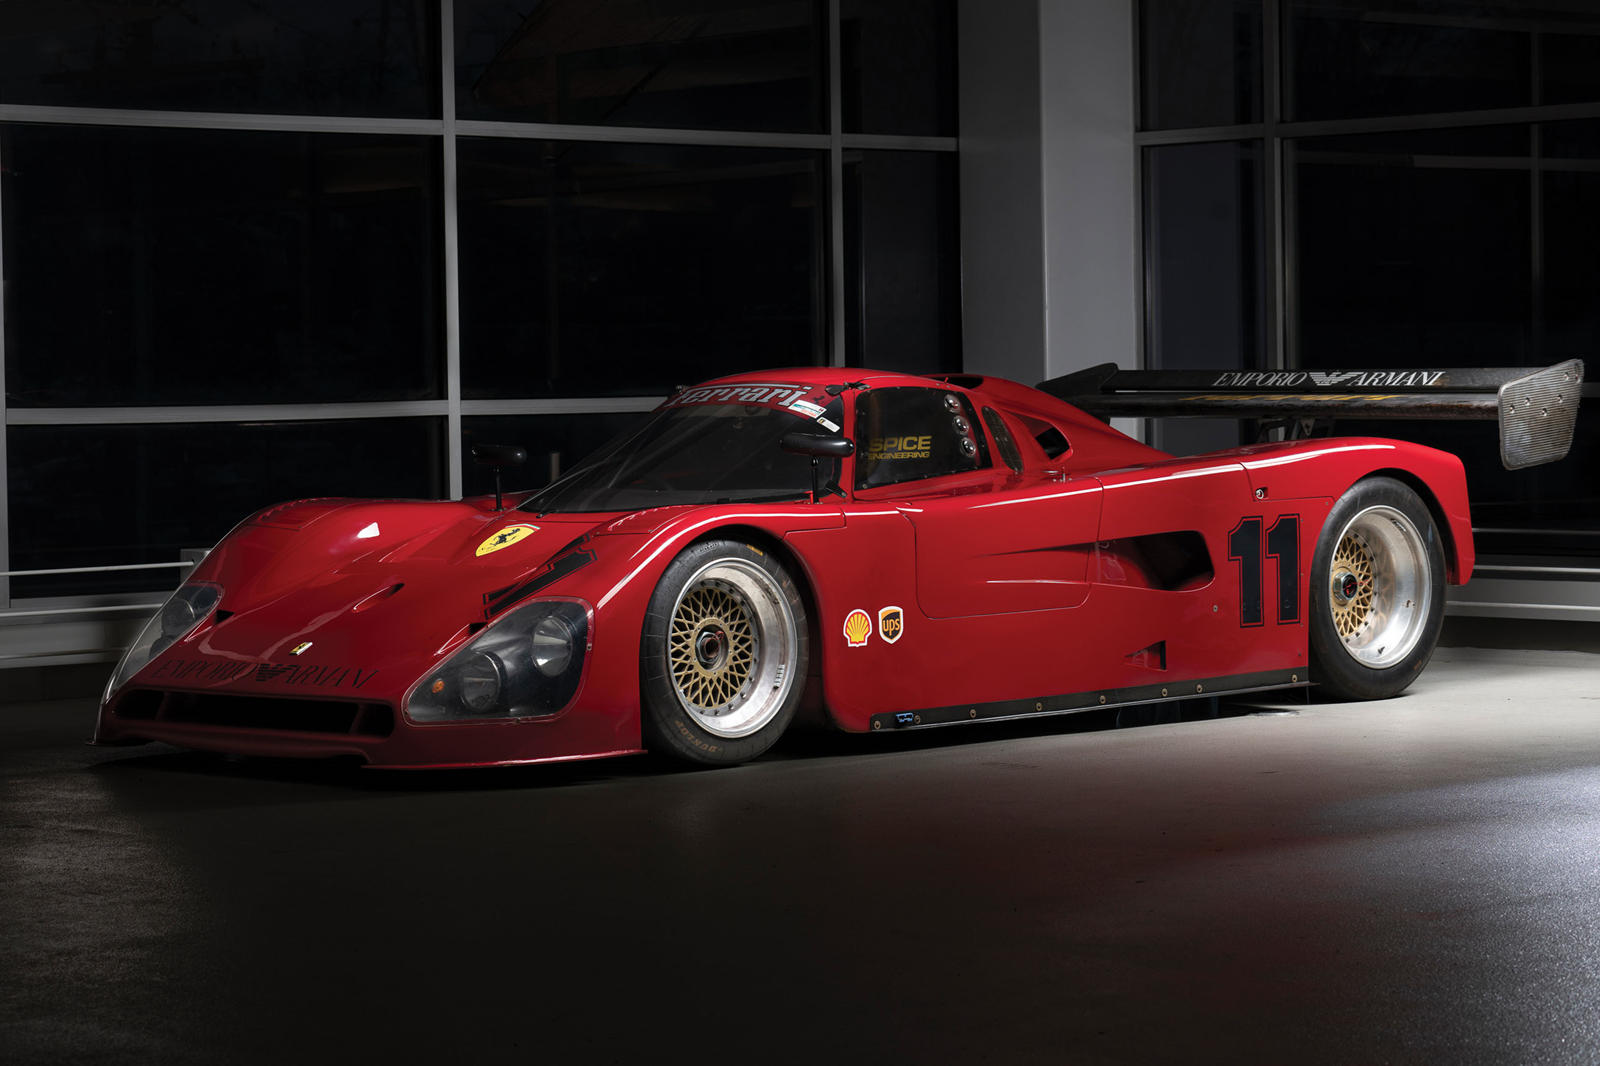 С новым топливным элементом, сцеплением и дисками BBS эта темная глава в обширной гоночной истории Ferrari будет выставлена на аукцион в рамках продажи RM Sotheby